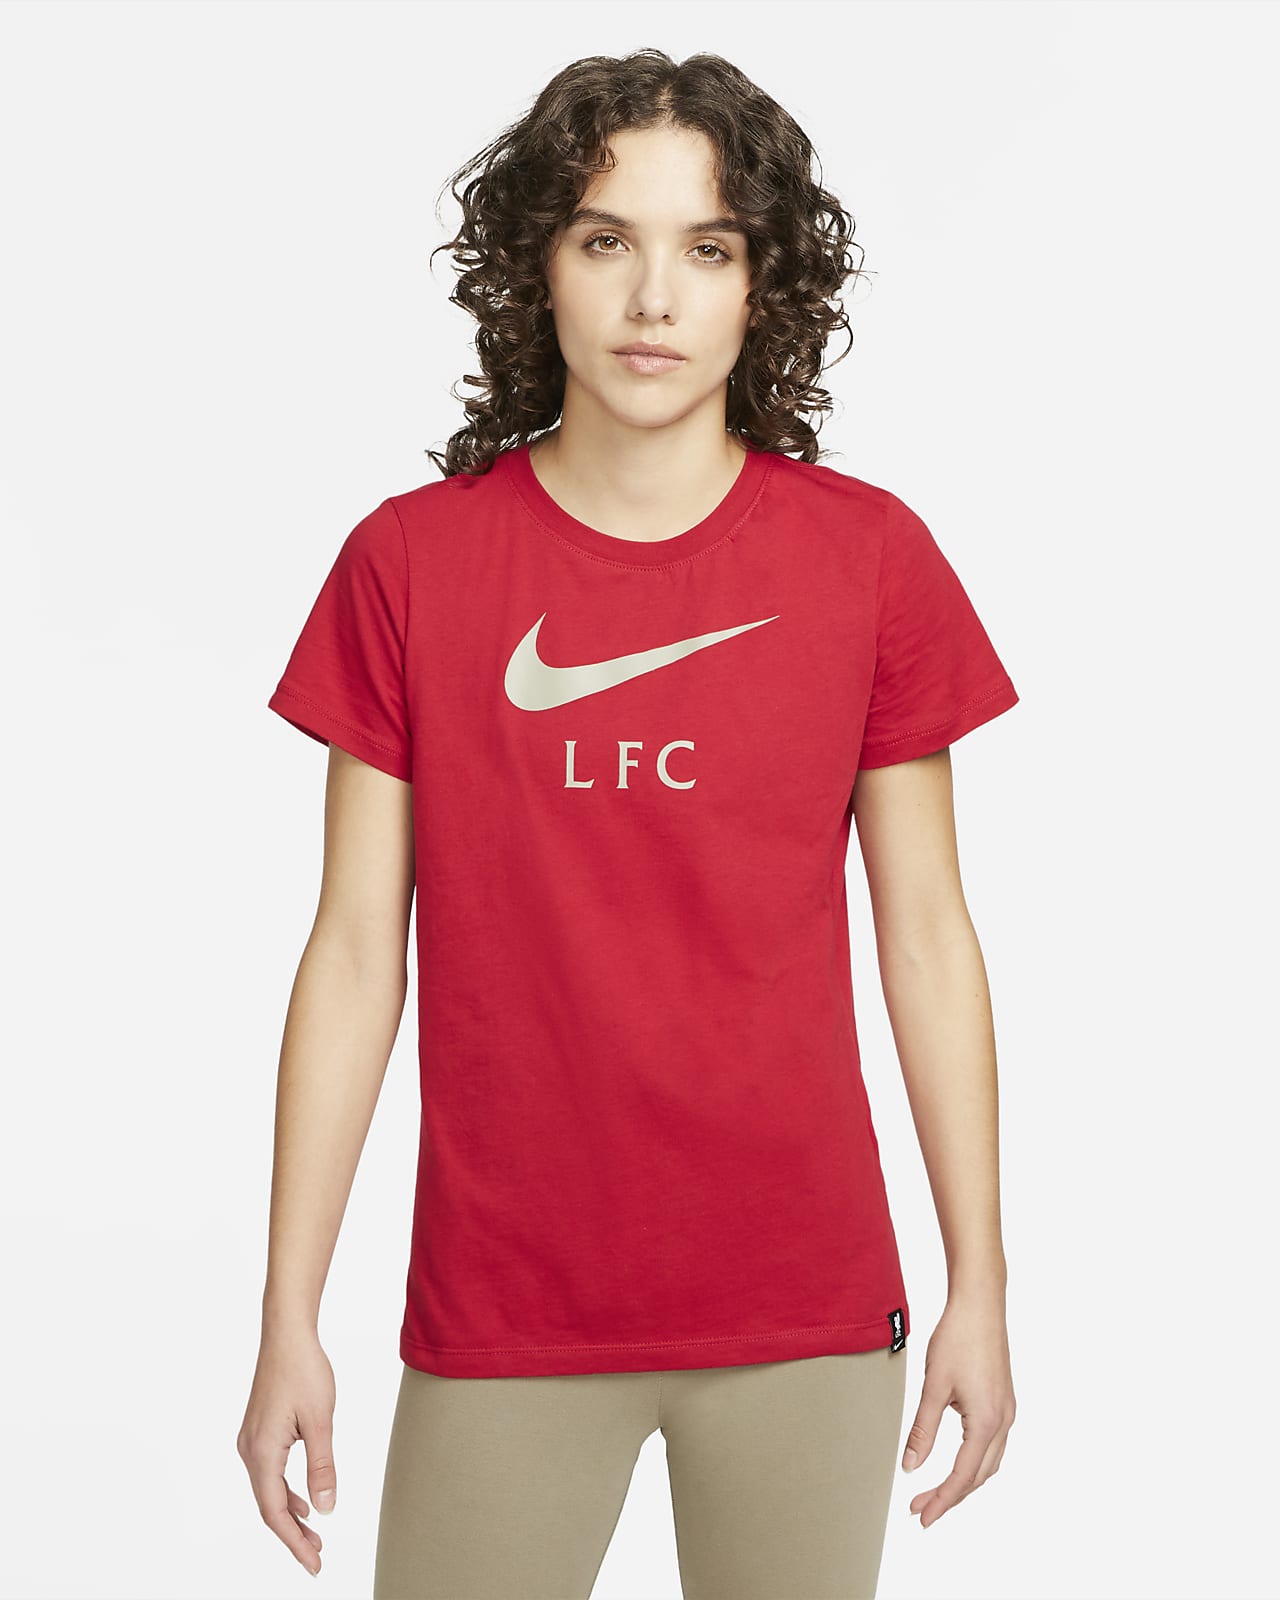 Playera para Liverpool FC. Nike.com